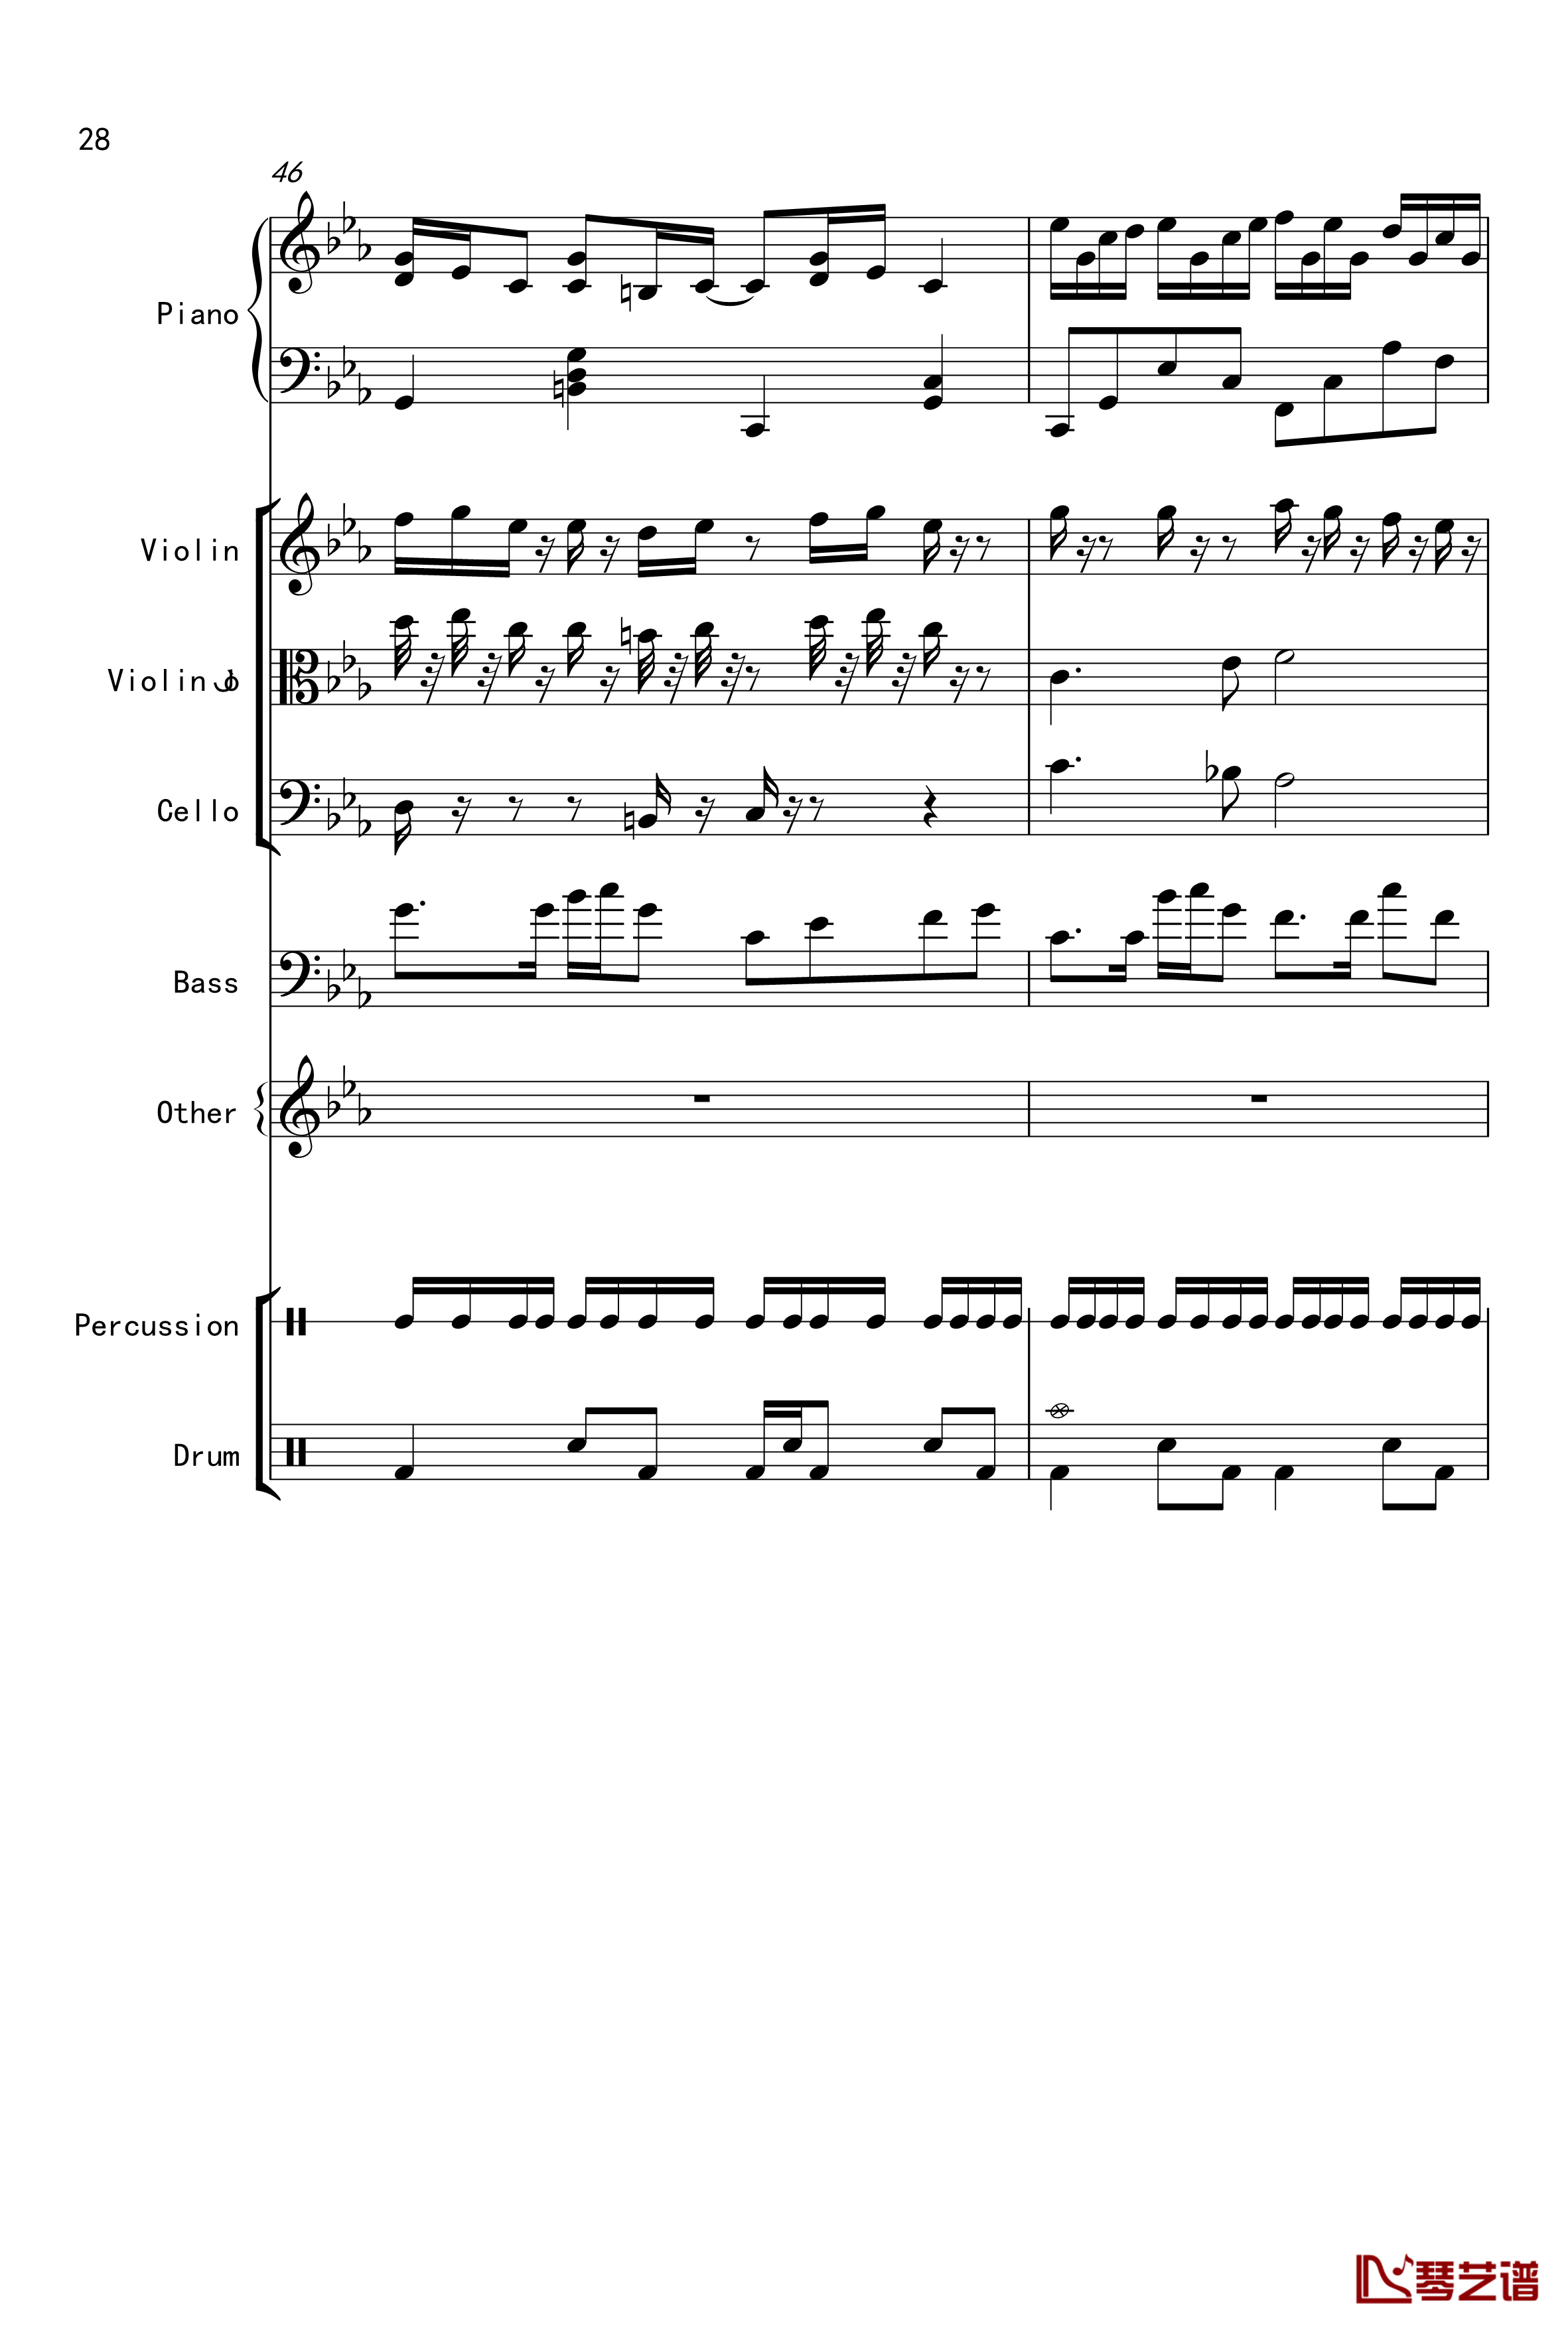 克罗地亚舞曲钢琴谱-Croatian Rhapsody-马克西姆-Maksim·Mrvica28